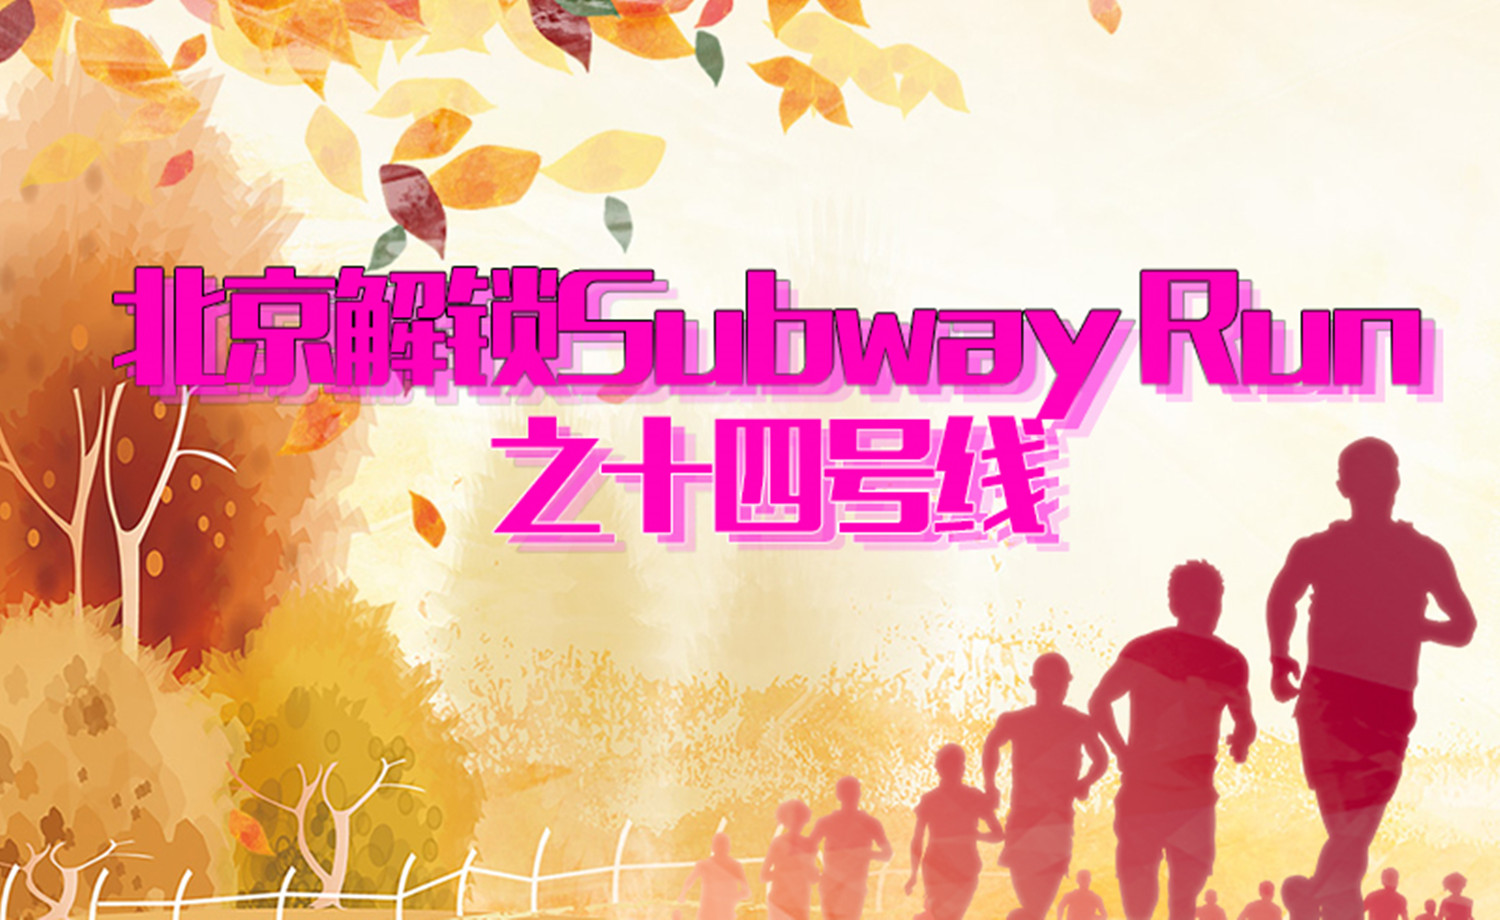 《北京解锁Subway Run》之十四号线